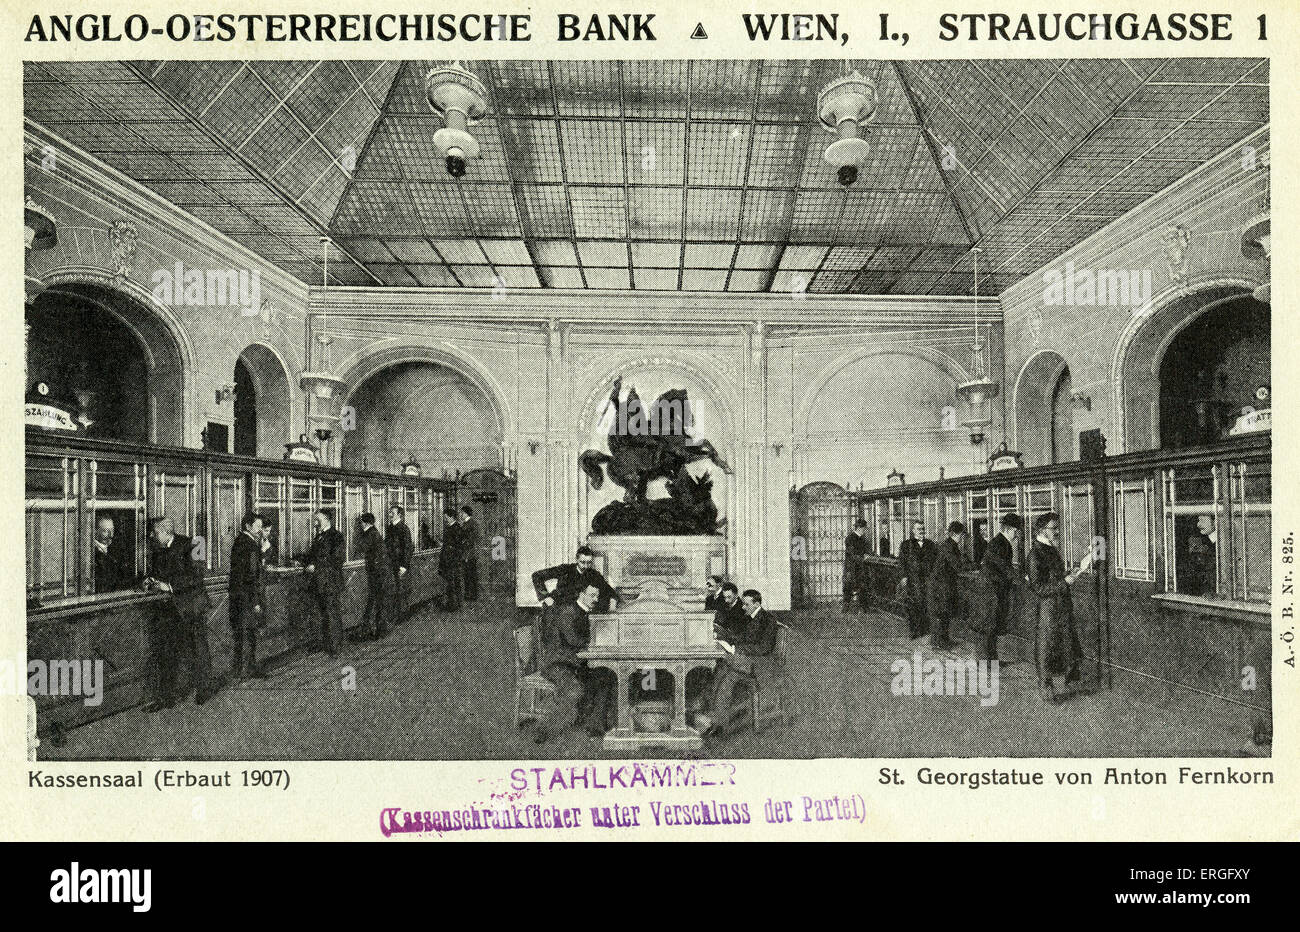 Anglo - österreichischen Bank, Wien, Österreich. Schalterhalle (erbaut 1907) mit Statue des Heiligen Georg von Anton Fernkorn.  Befindet sich am Stockfoto